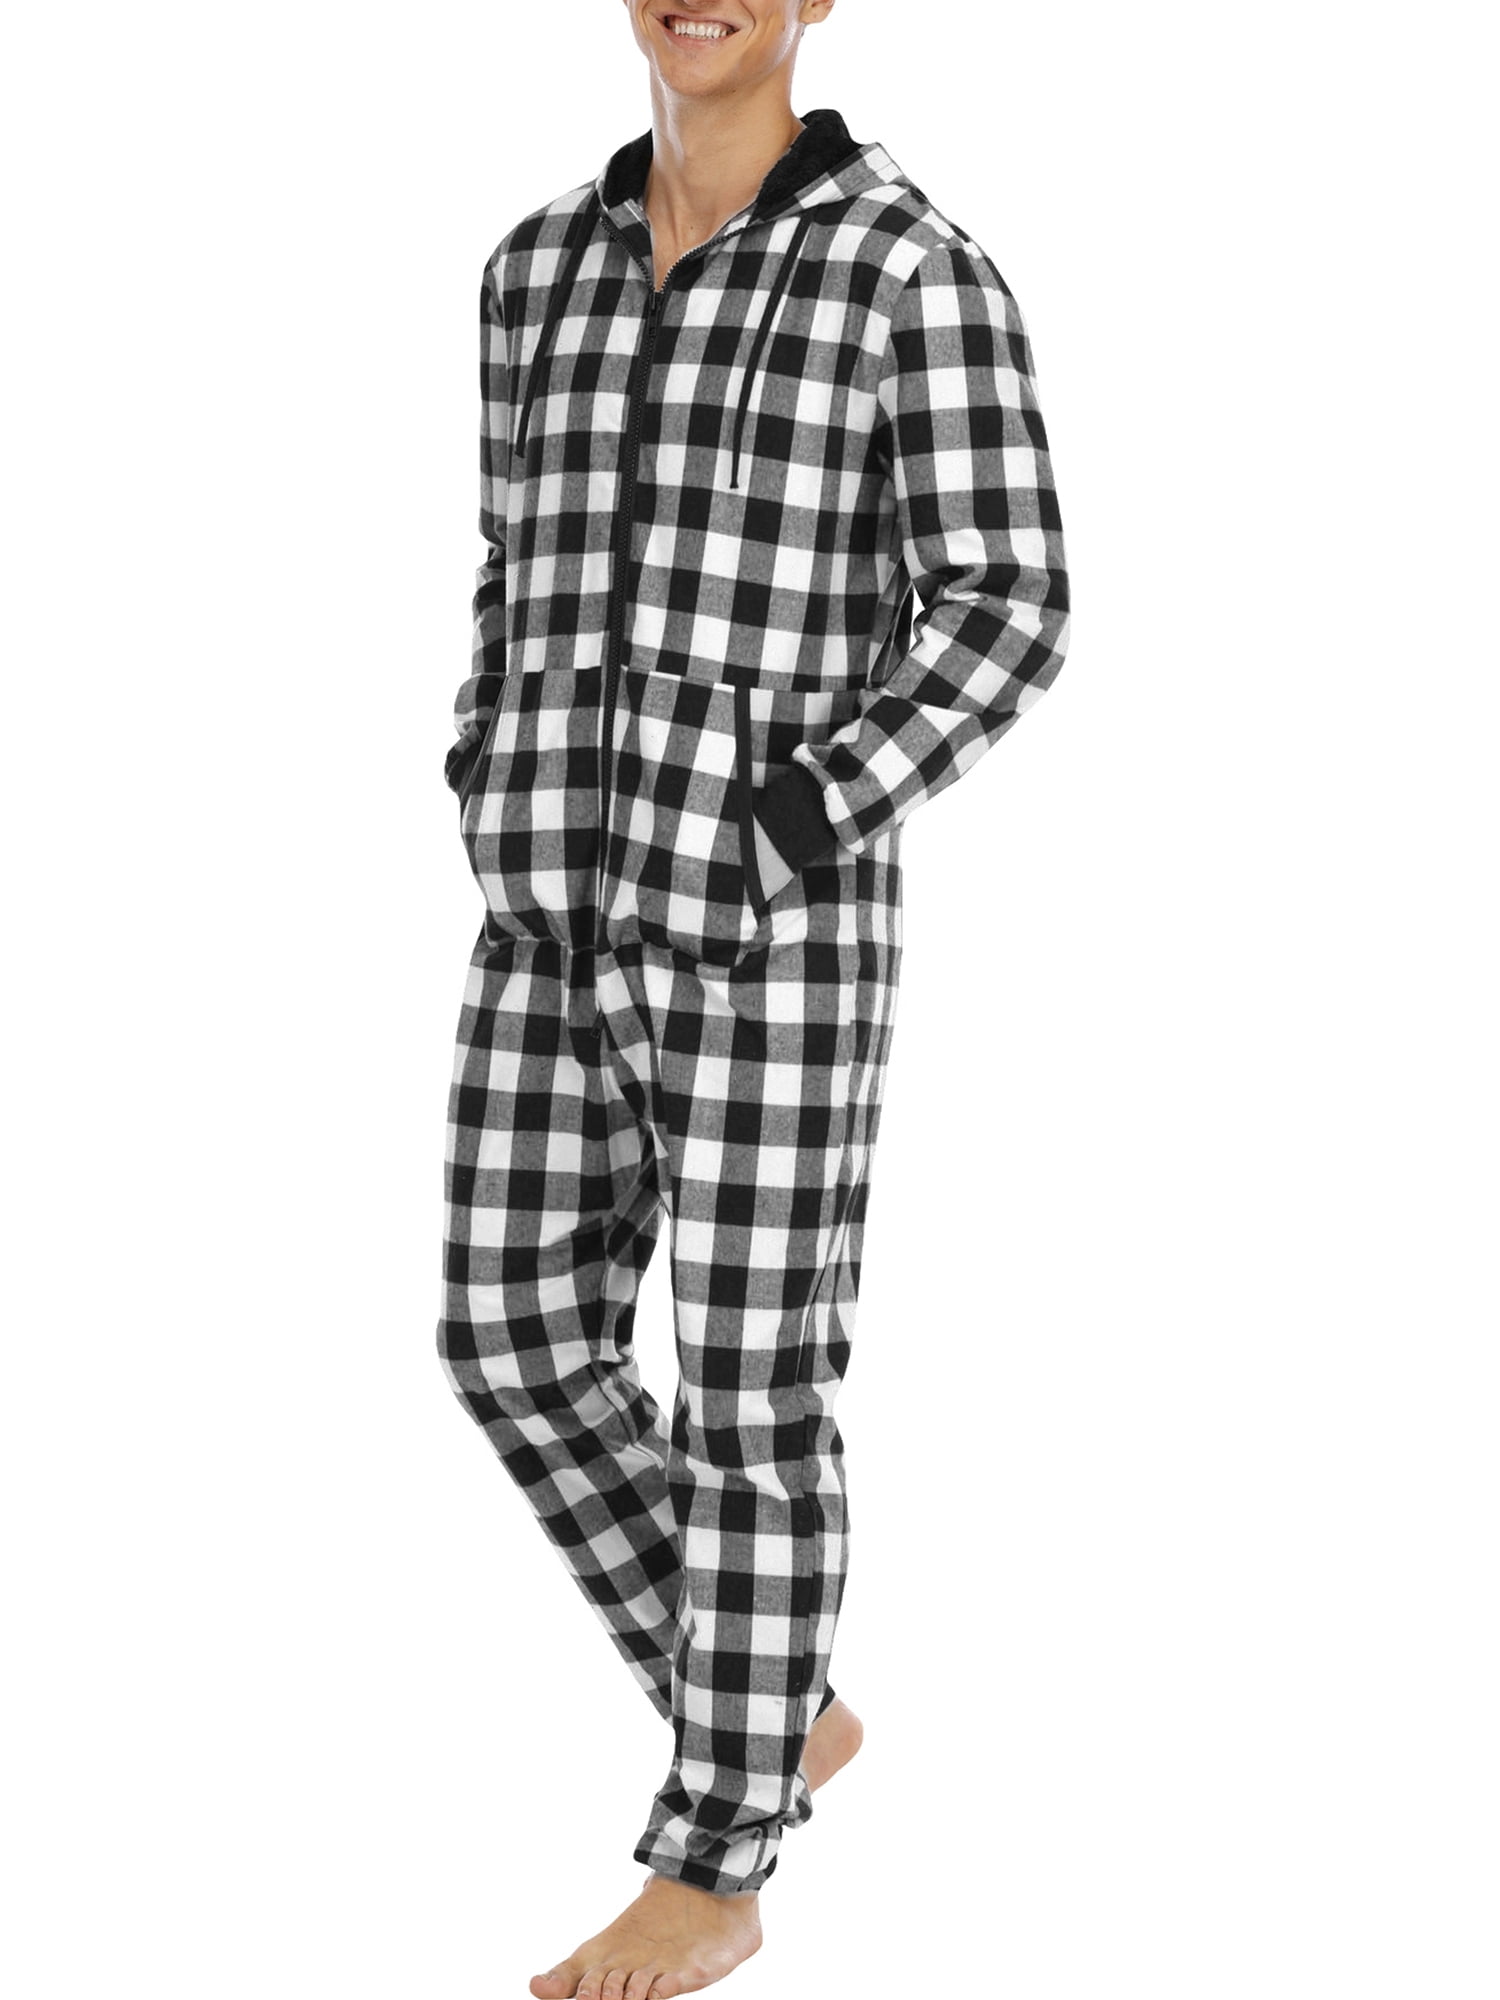 Mammoet Eerlijk weerstand Colisha One Piece Pajamas Jumpsuit for Men Casual Long Sleeve Plaid Onesie  with Hooded - Walmart.com